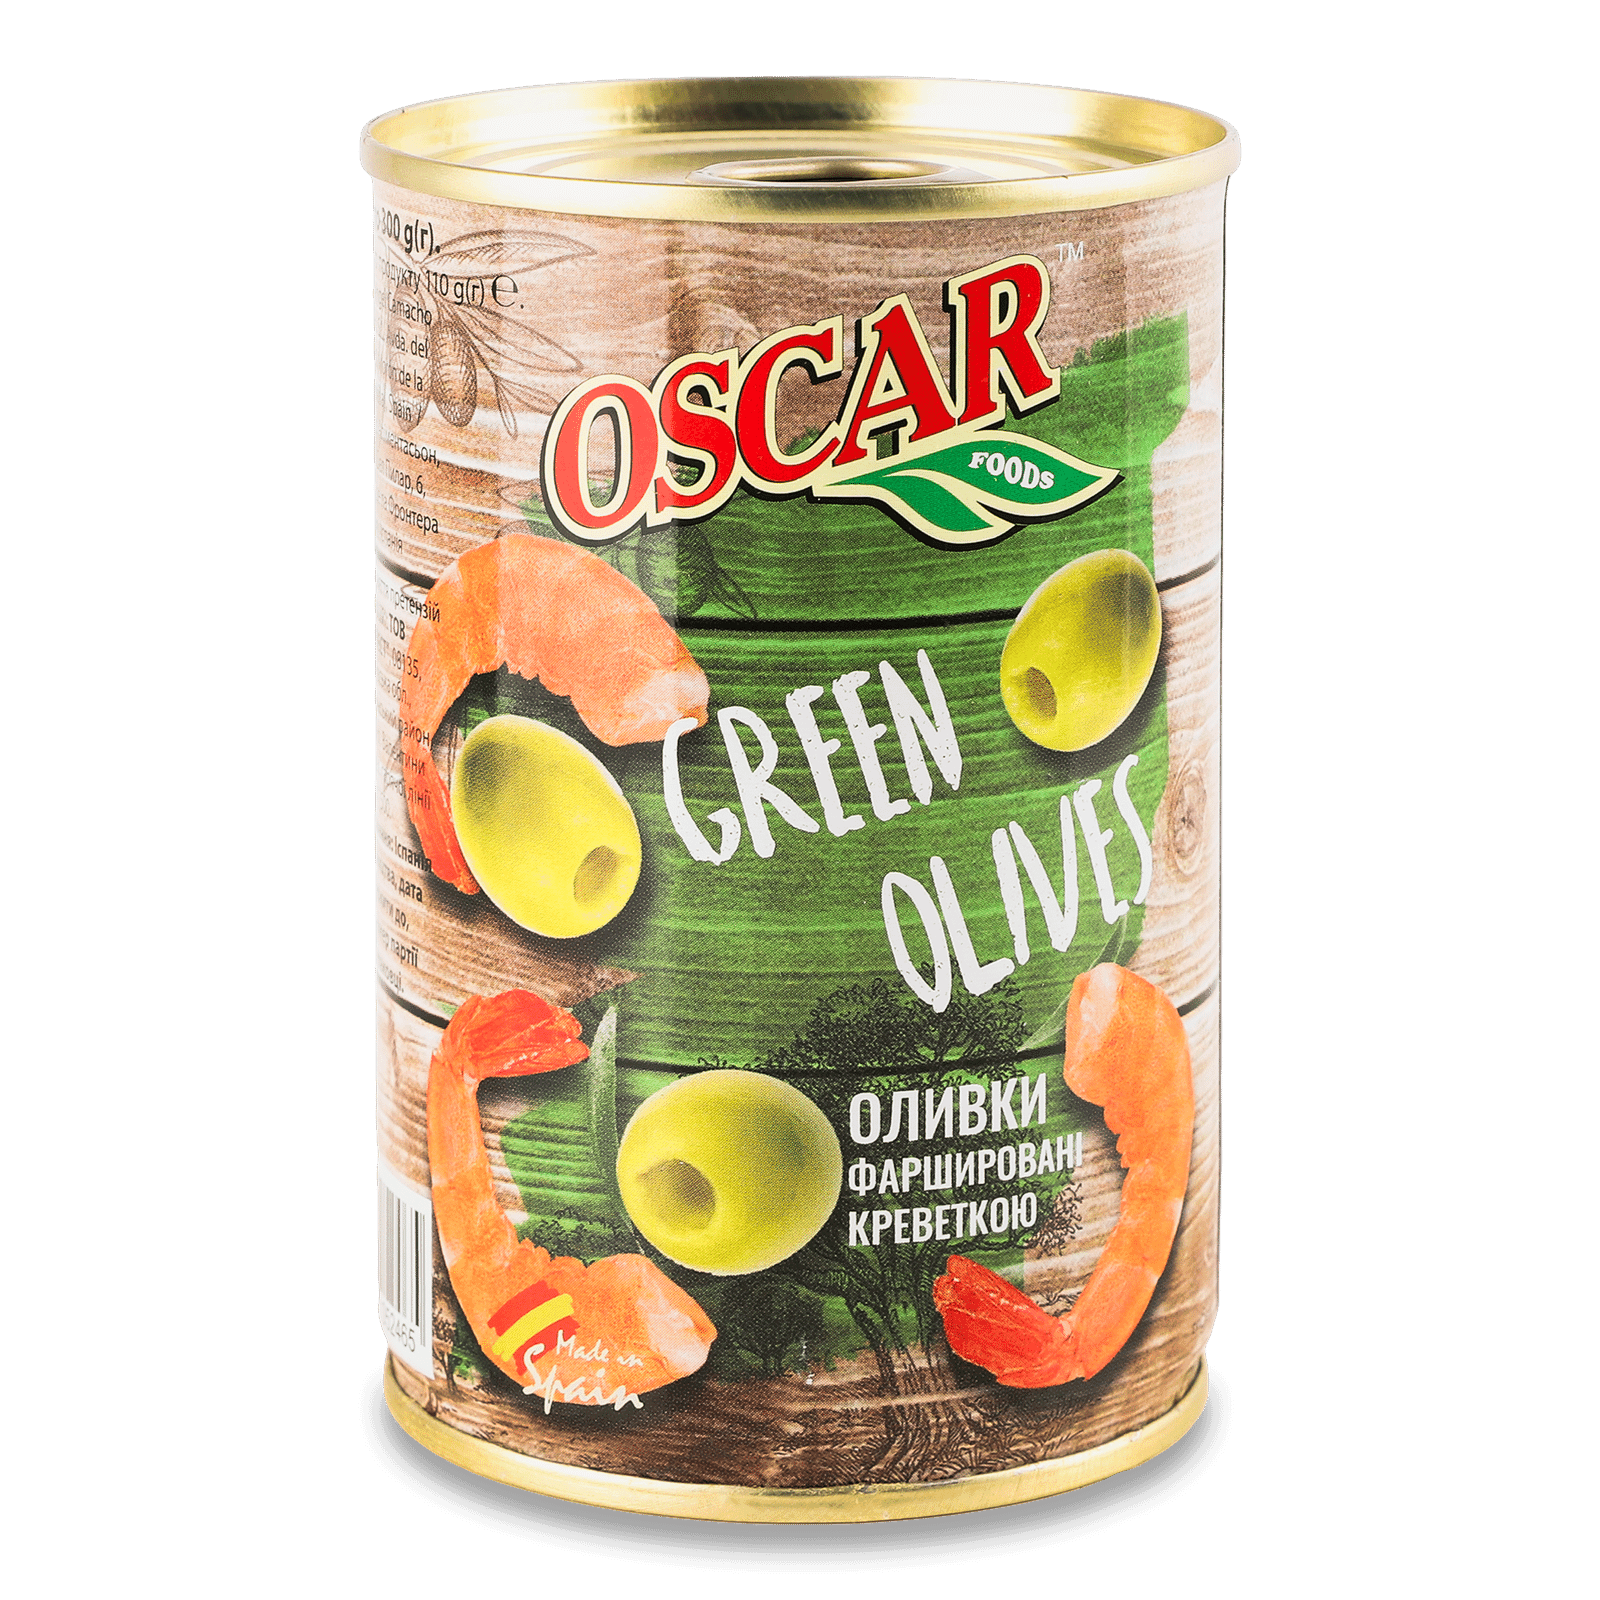 Оливки Oscar фаршировані креветками - 1